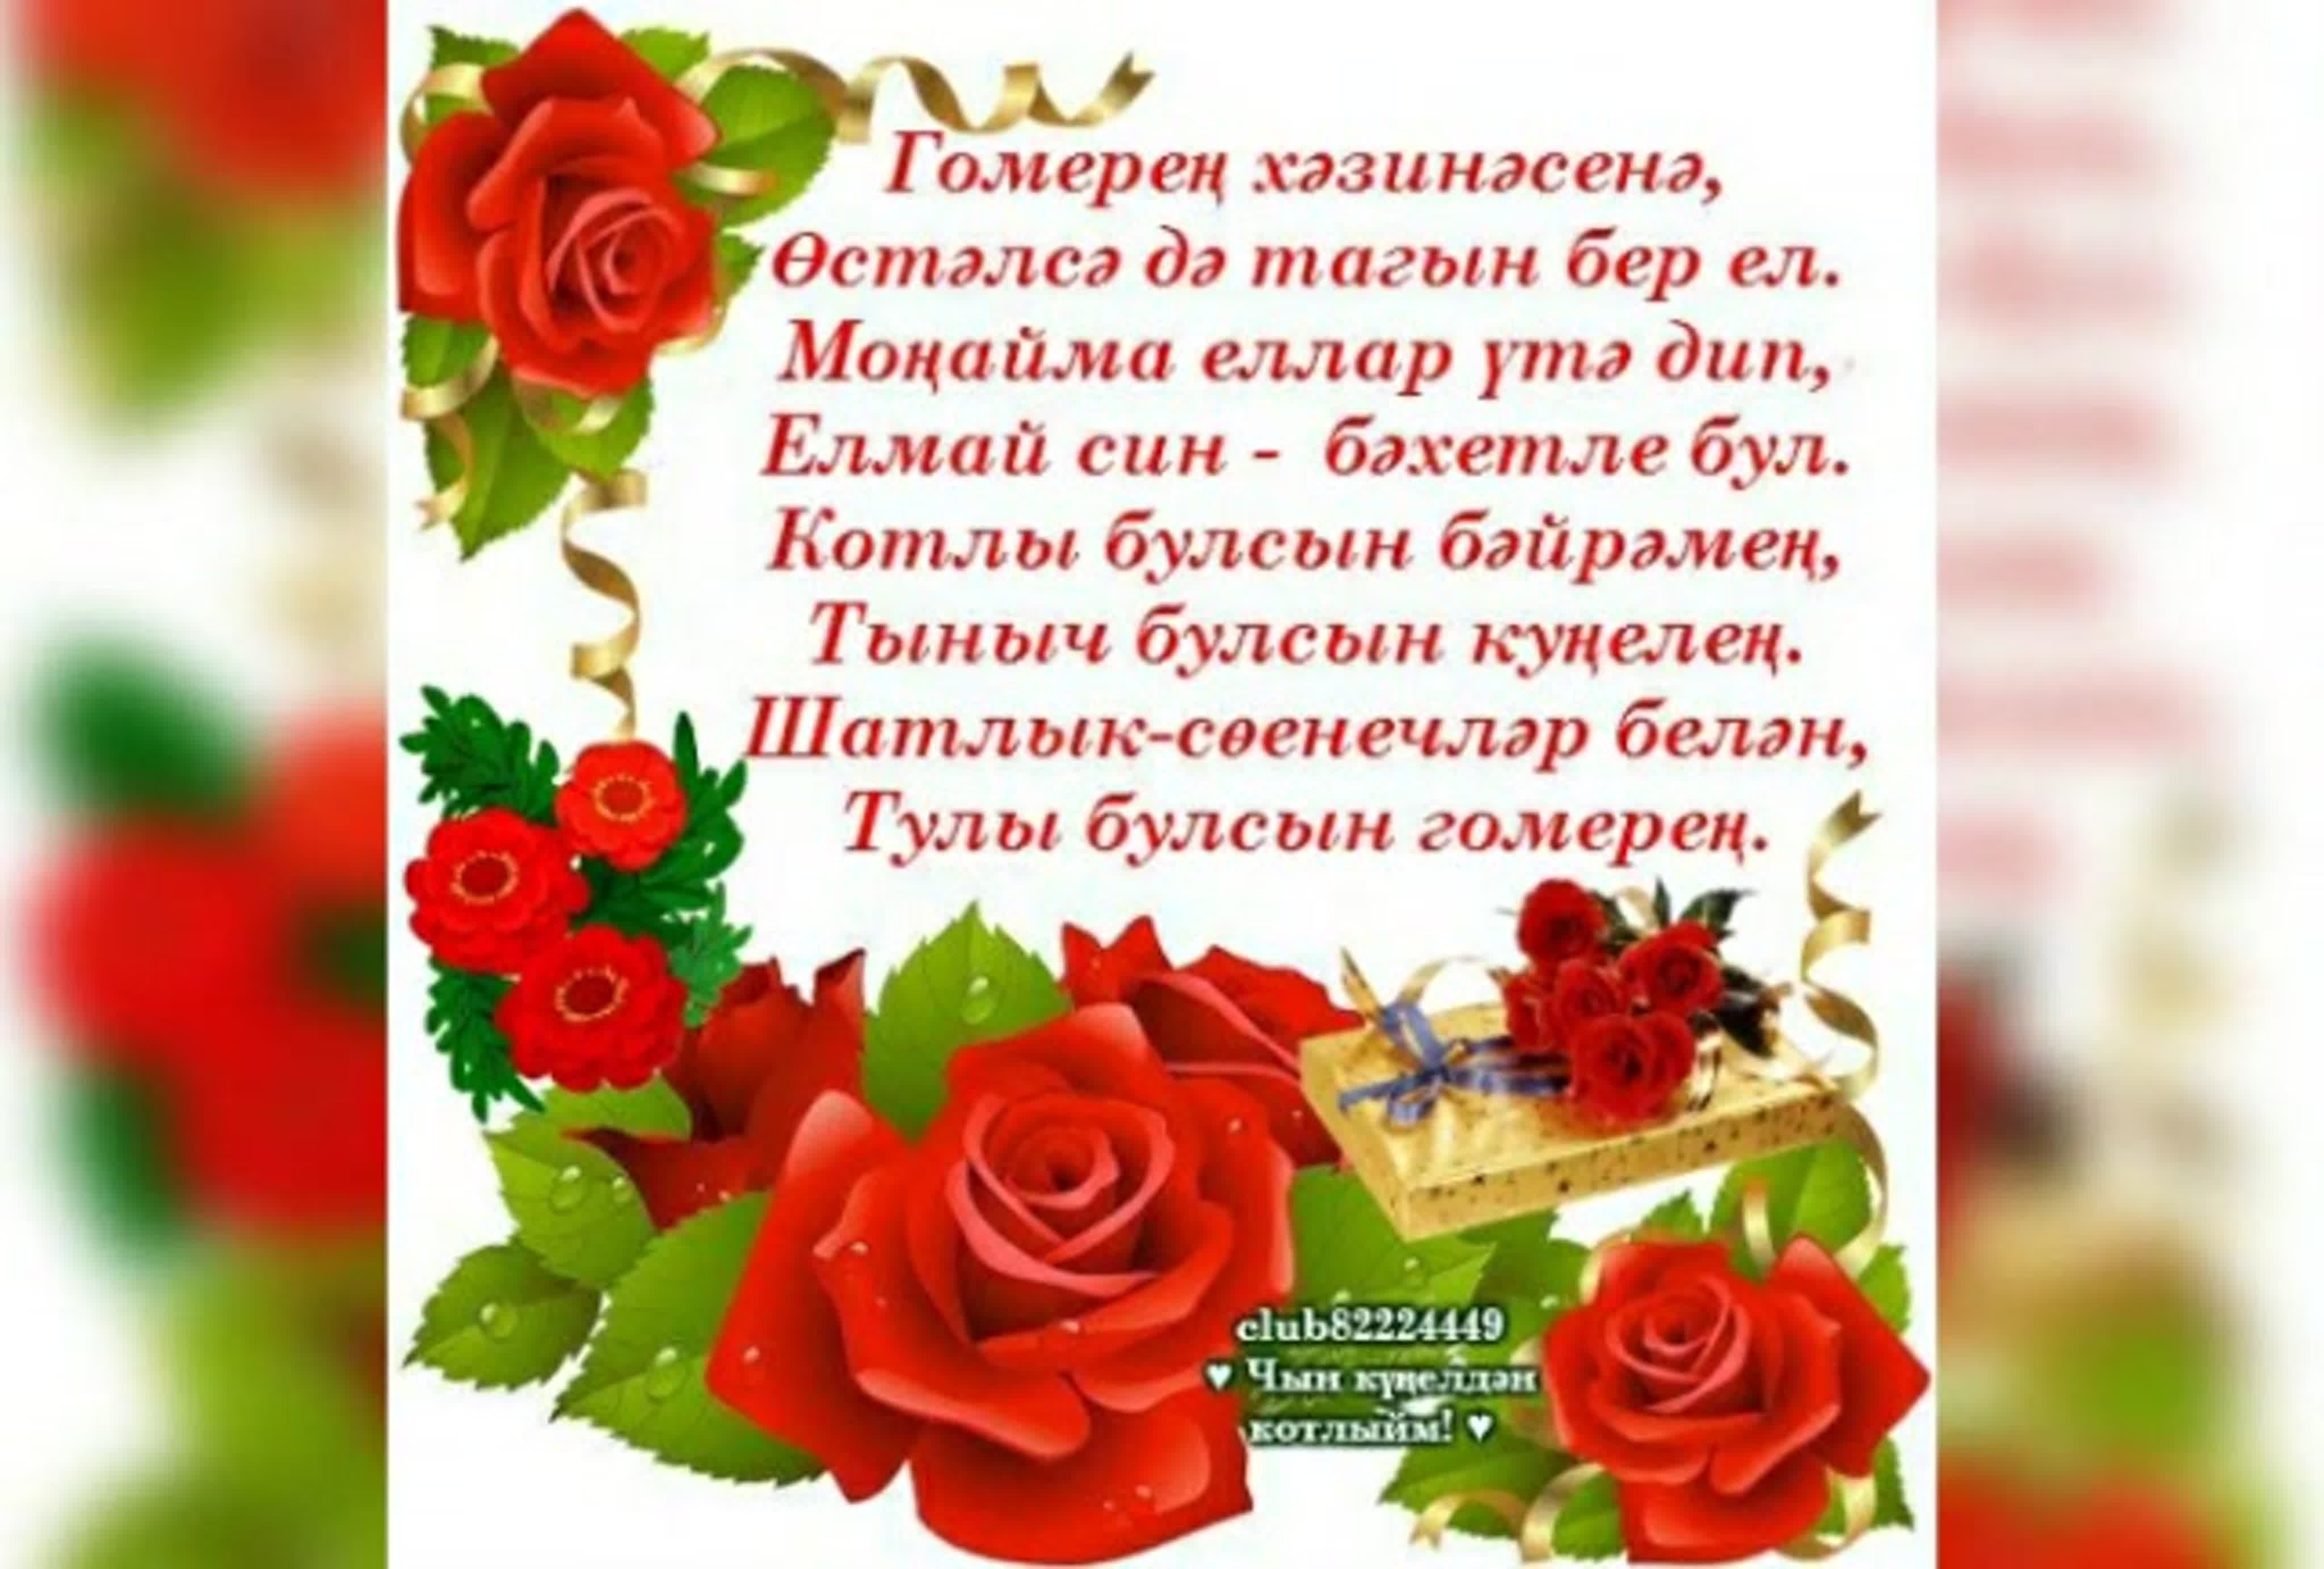 Поздравление сестры на башкирском языке. Поздравления с днём рождения на татарском. Поздравления с днём рождения на татарском языке. Поздравления с днём с днём рождения на татарском языке. Пожелания с днём рождения по татарский.